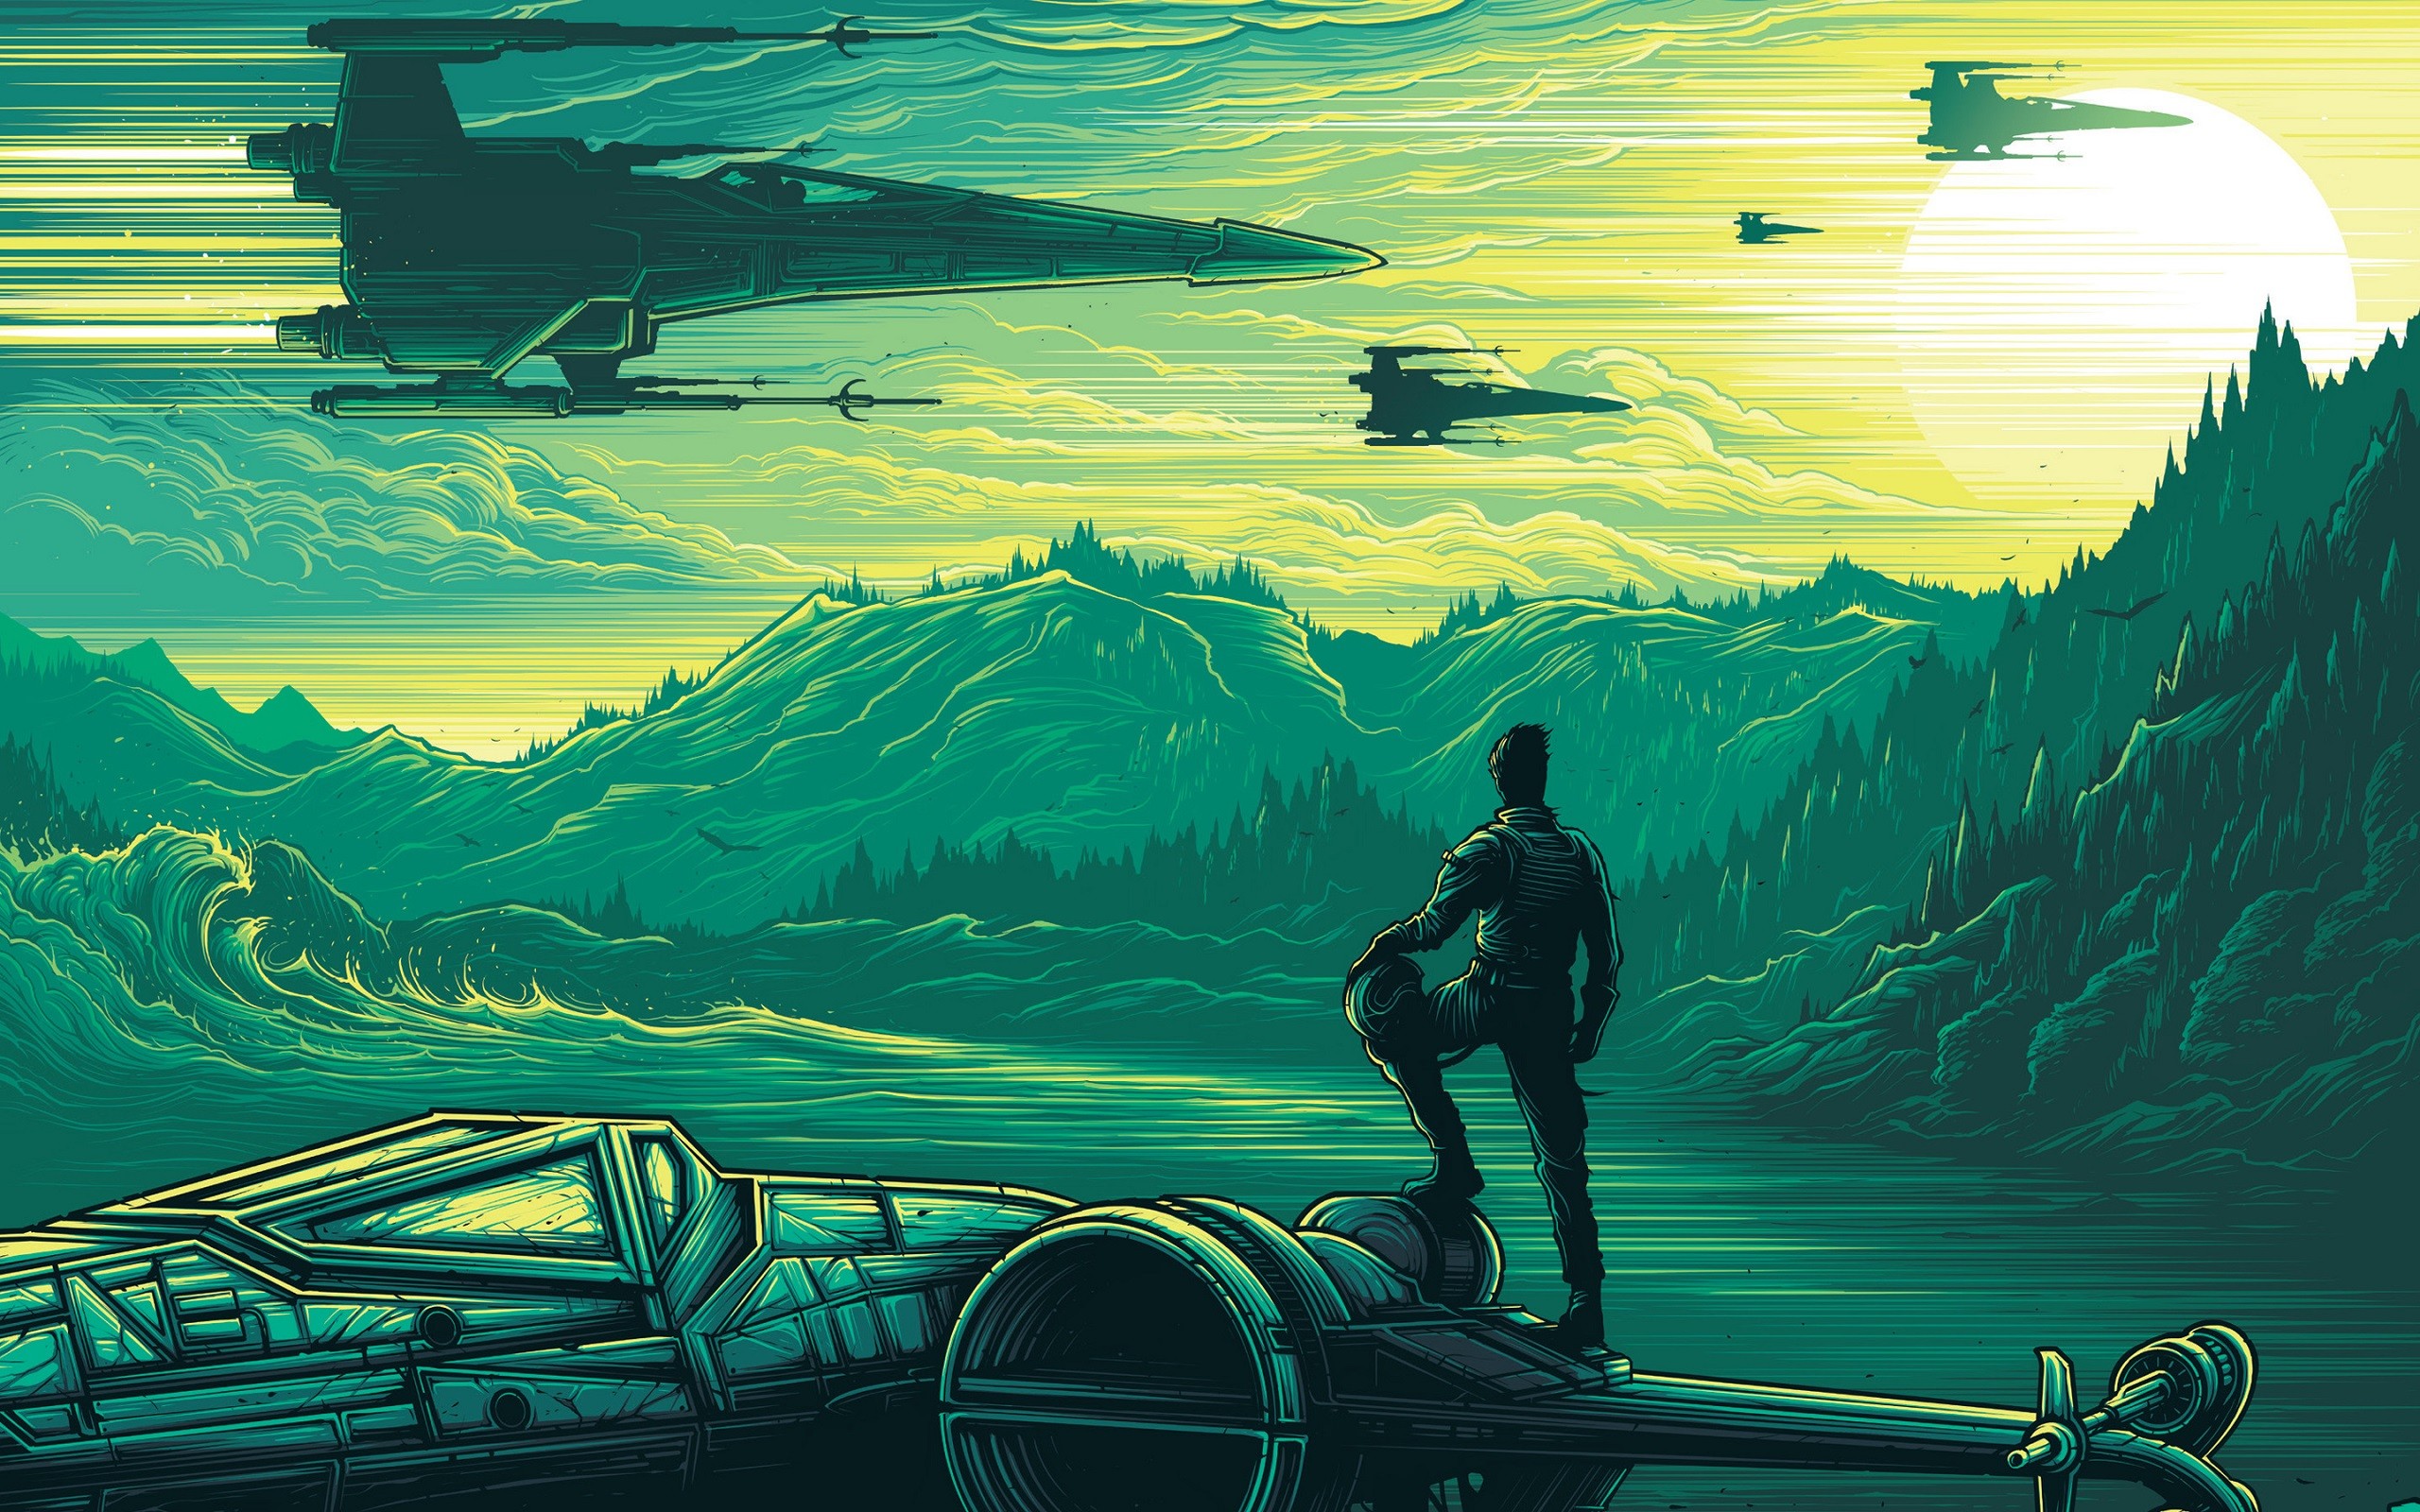 General 2560x1600 Star Wars Star Wars: The Force Awakens artwork X-wing Dan Mumford science fiction movies Star Wars Ships vehicle digital art